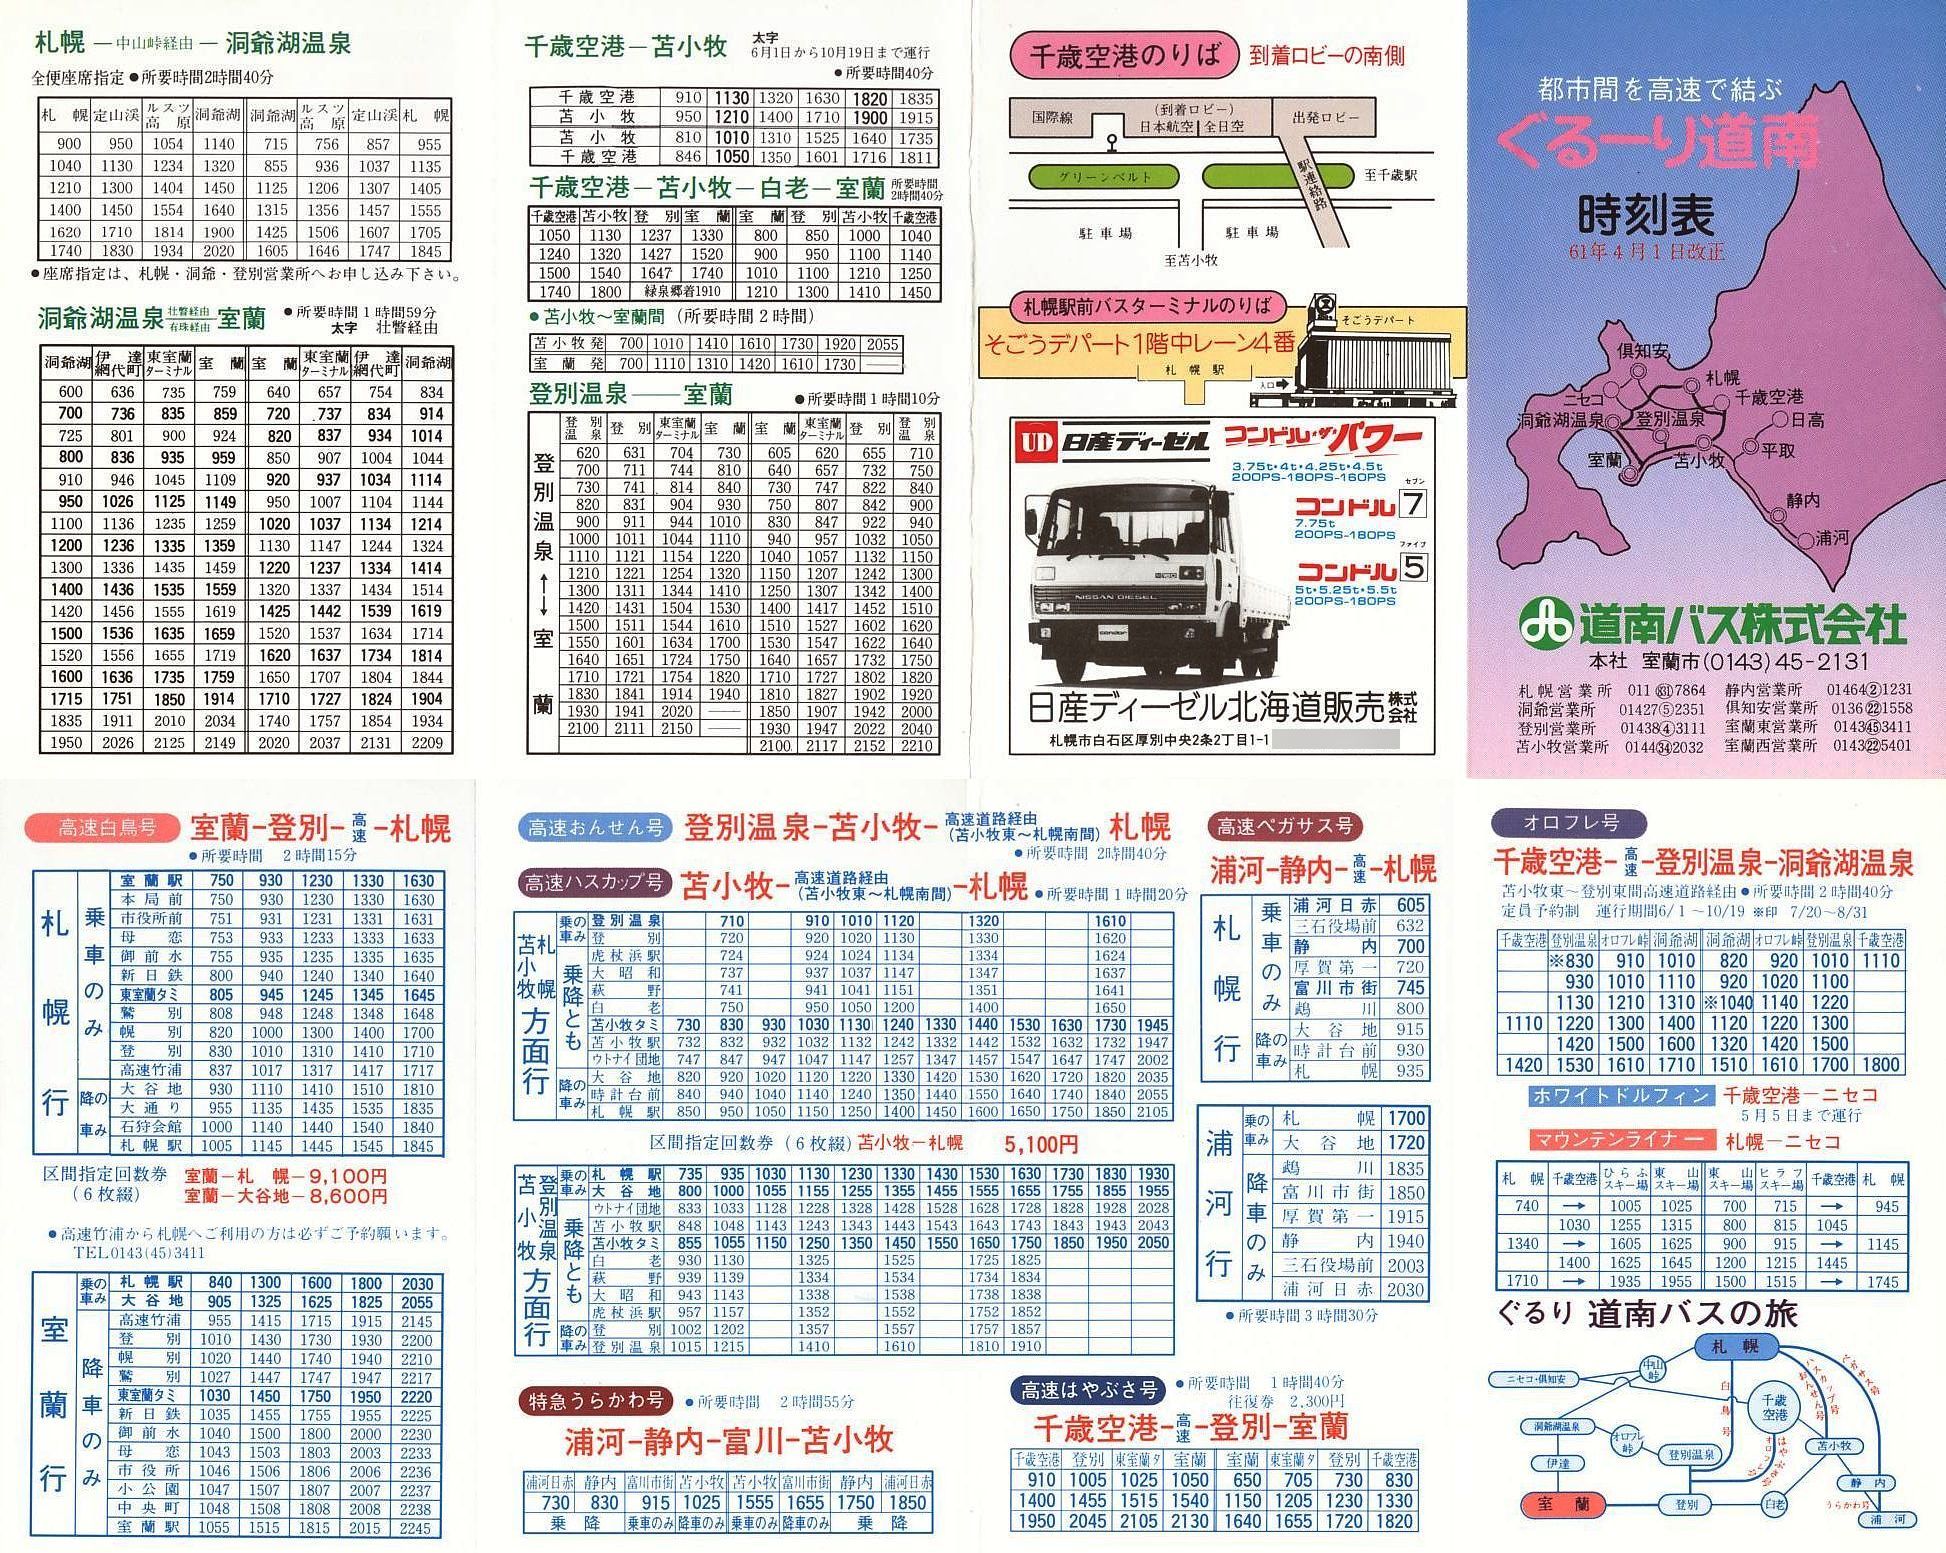 1986-04-01改正_道南バス_ぐるーり道南時刻表